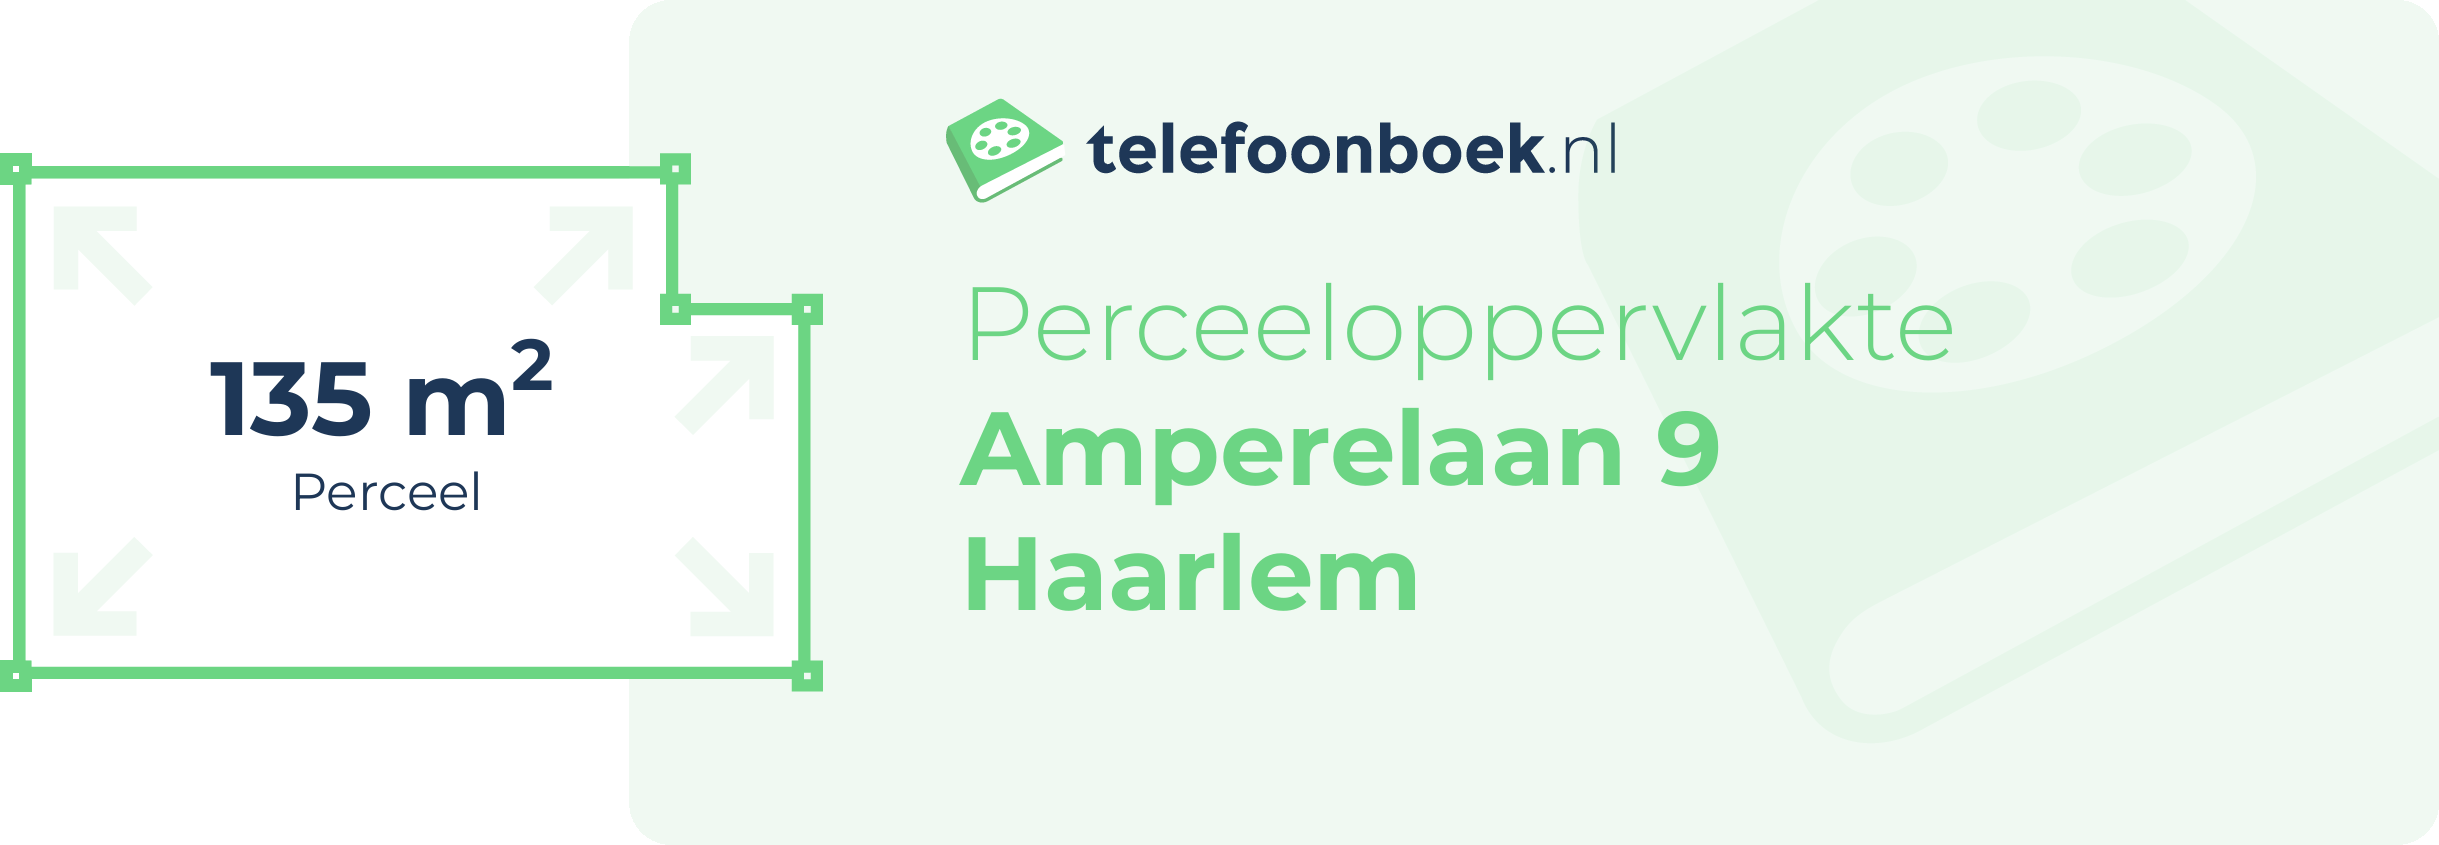 Perceeloppervlakte Amperelaan 9 Haarlem